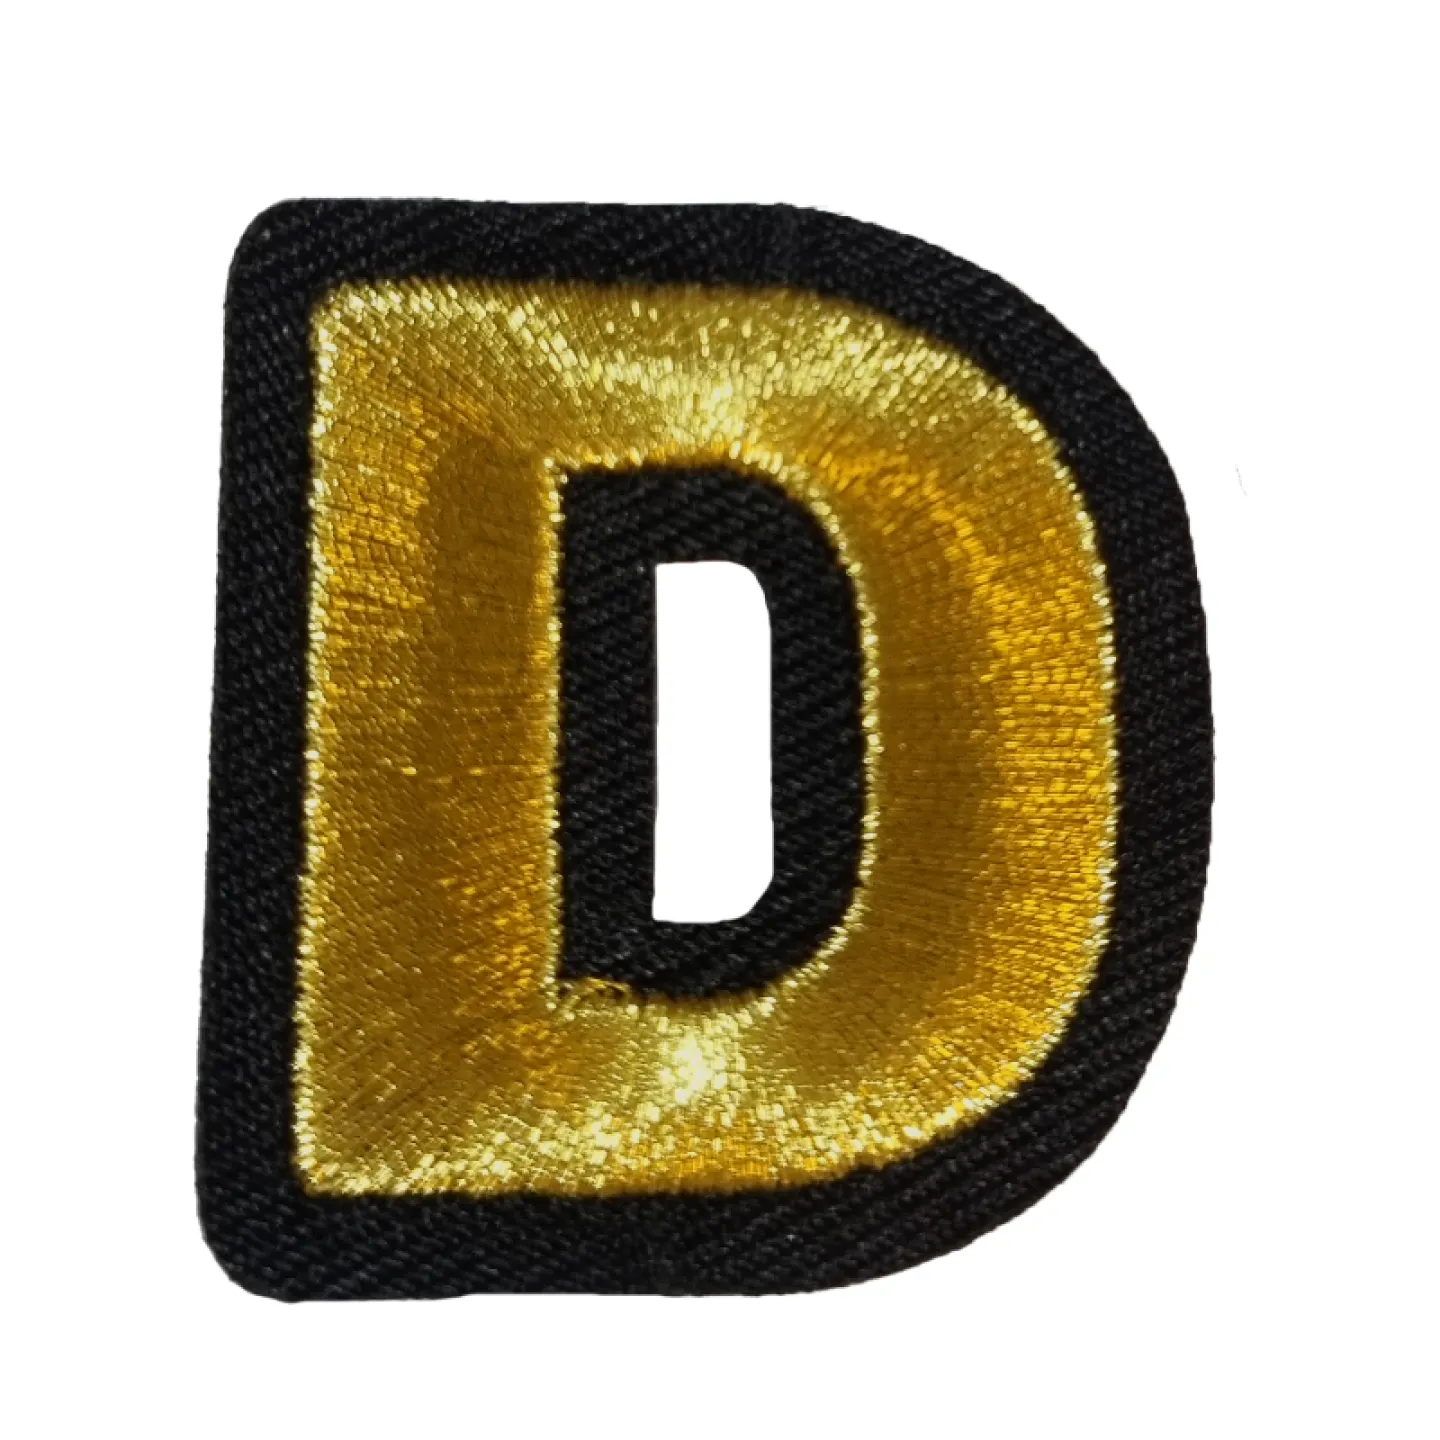 Kruikenstad embleem gouden letter D goedkoop.